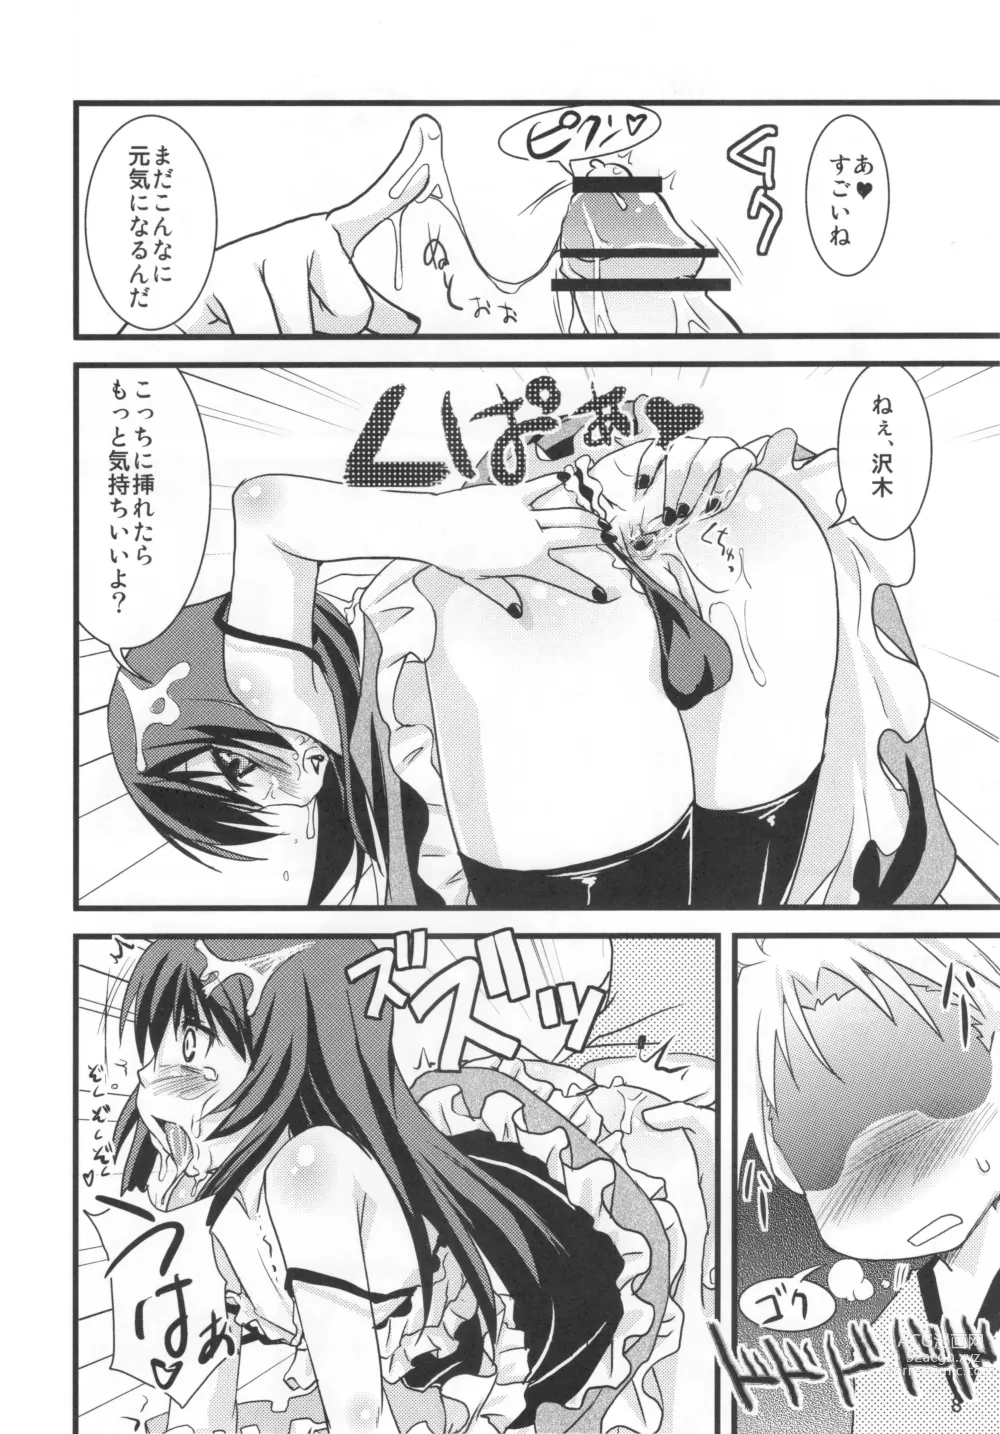 Page 7 of doujinshi Kamosu Moyasu 2